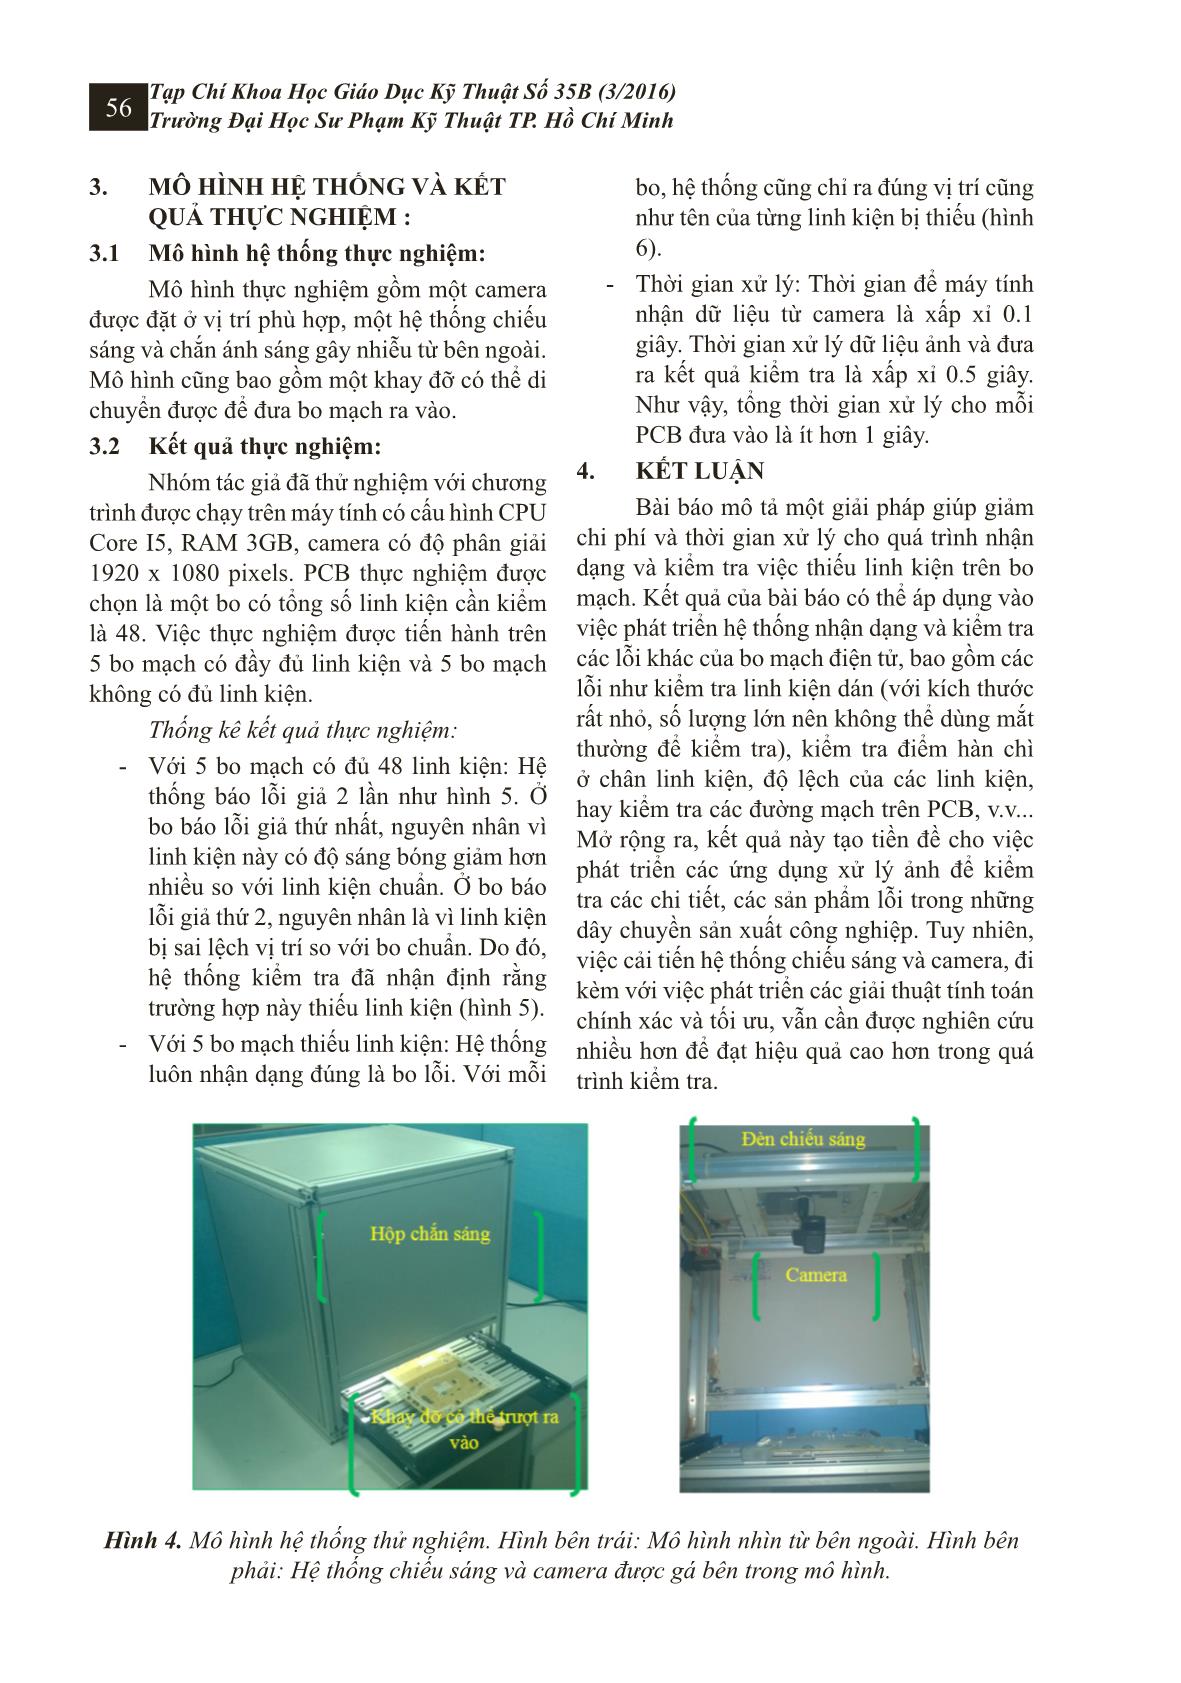 Hệ thống kiểm tra linh kiện trên bo mạch điện tử sử dụng công nghệ xử lý ảnh trang 5